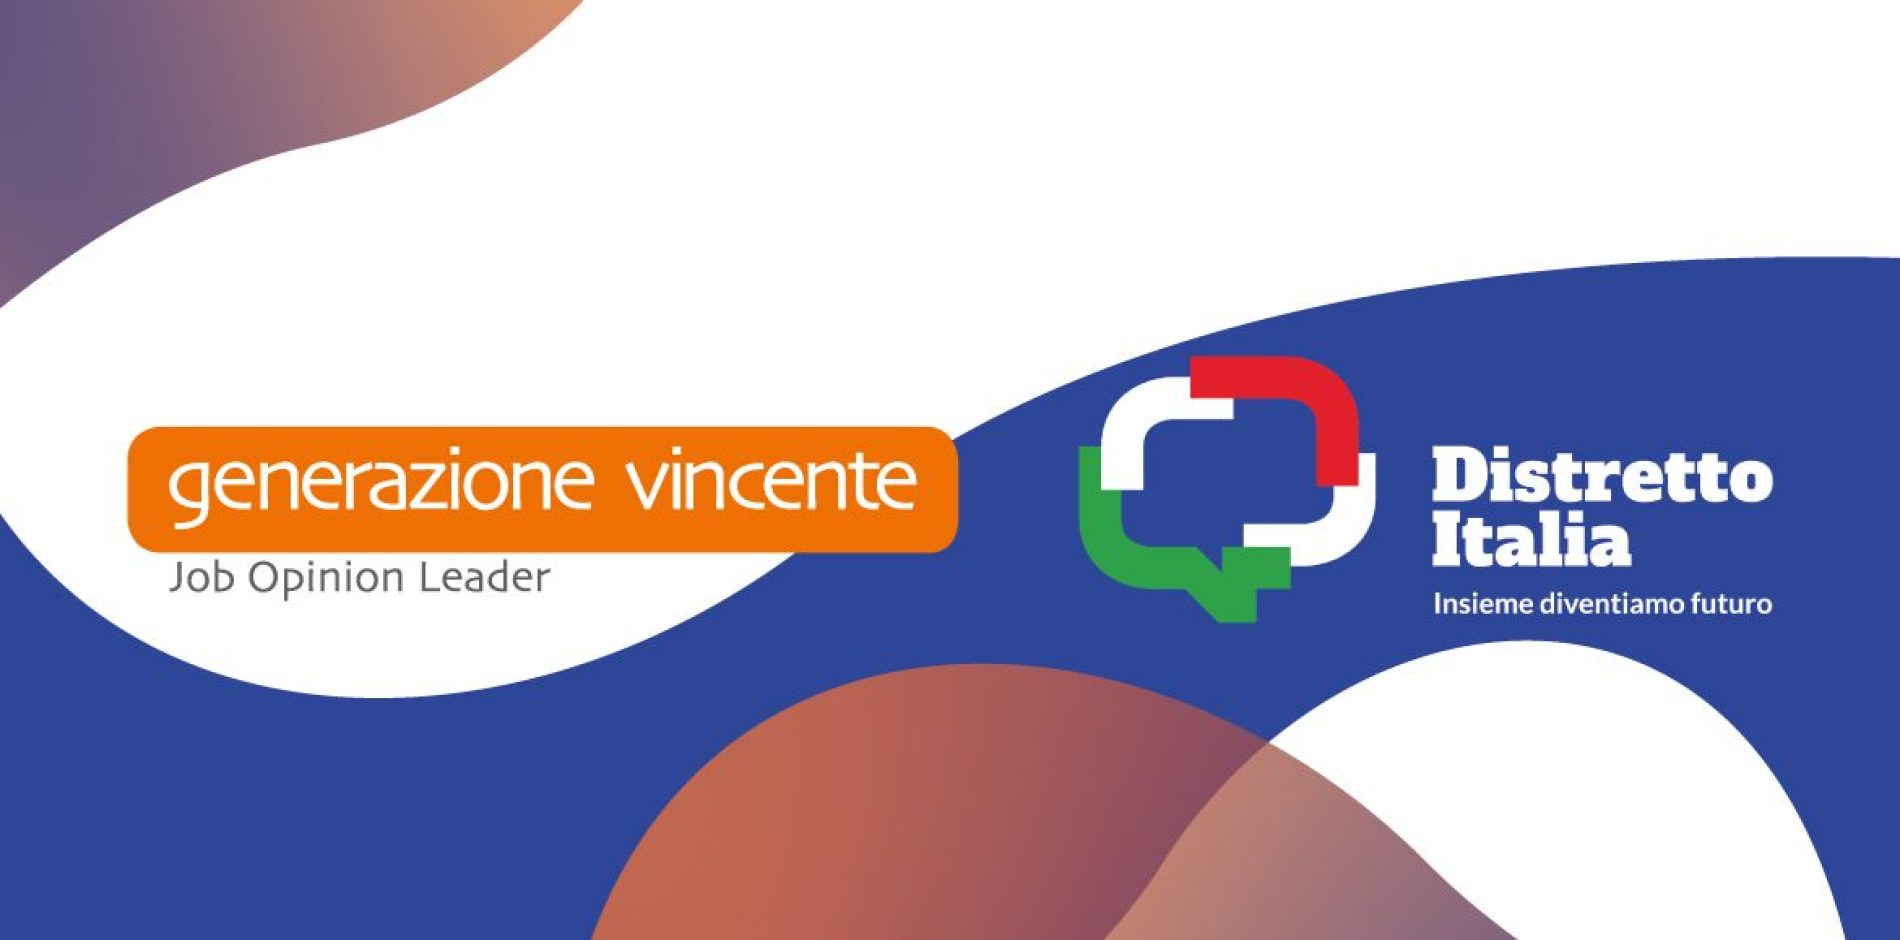 Generazione Vincente aderisce a “Distretto Italia”, un grande progetto di formazione e inserimento al lavoro